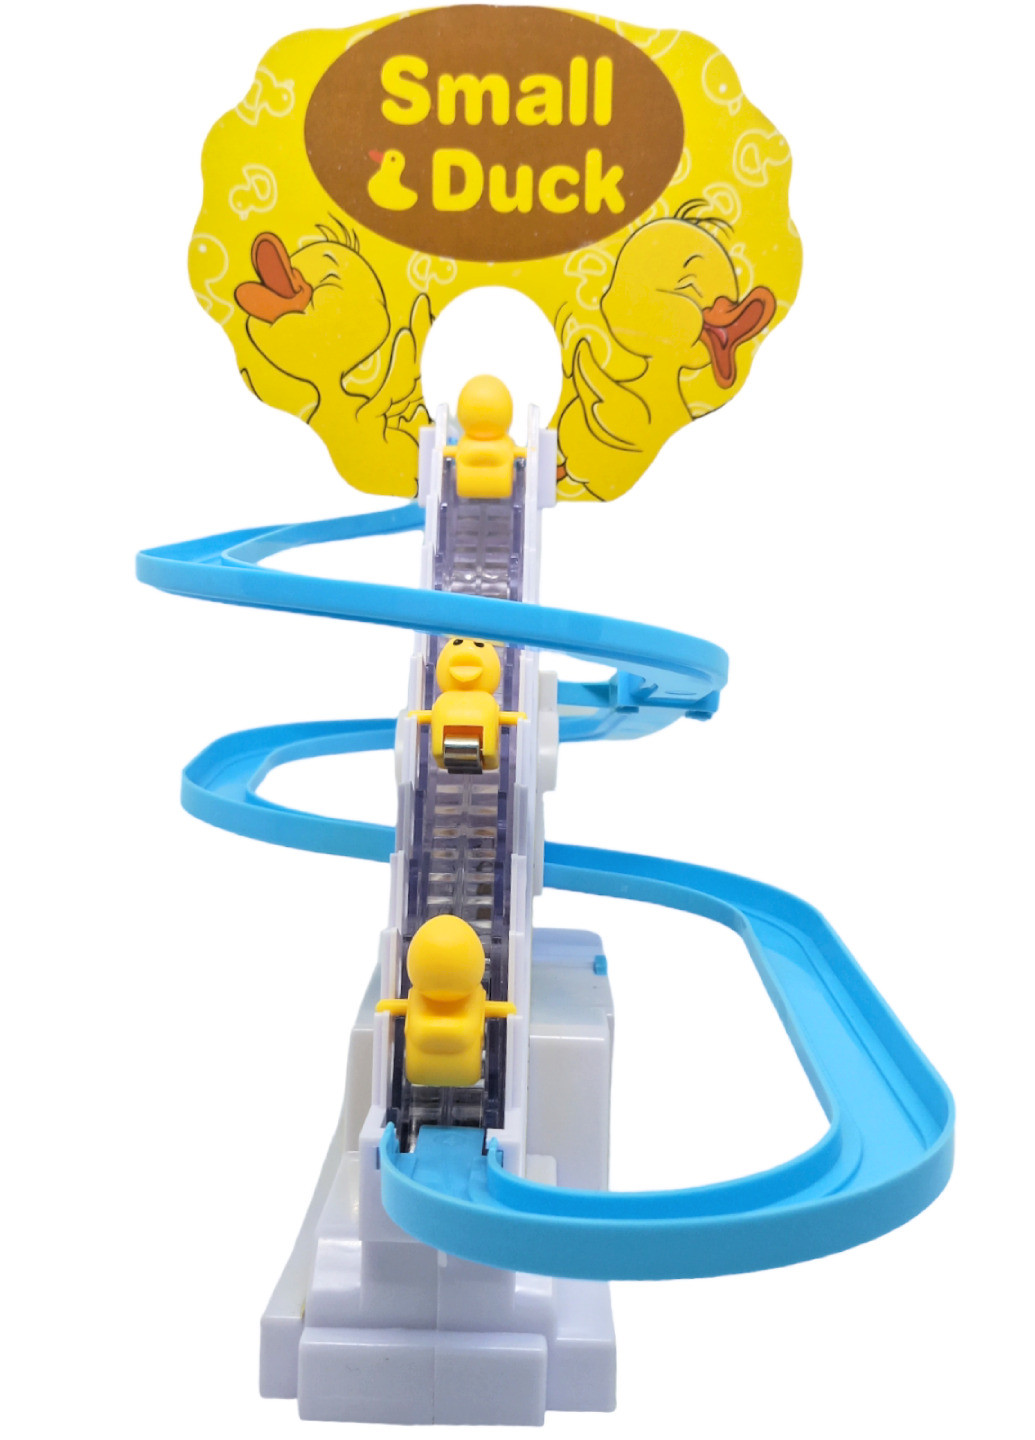 Каченята спускаються з гірки качечки електрична іграшка трек із качками качечками та звуковими ефектами Small Duck No Brand (259906547)